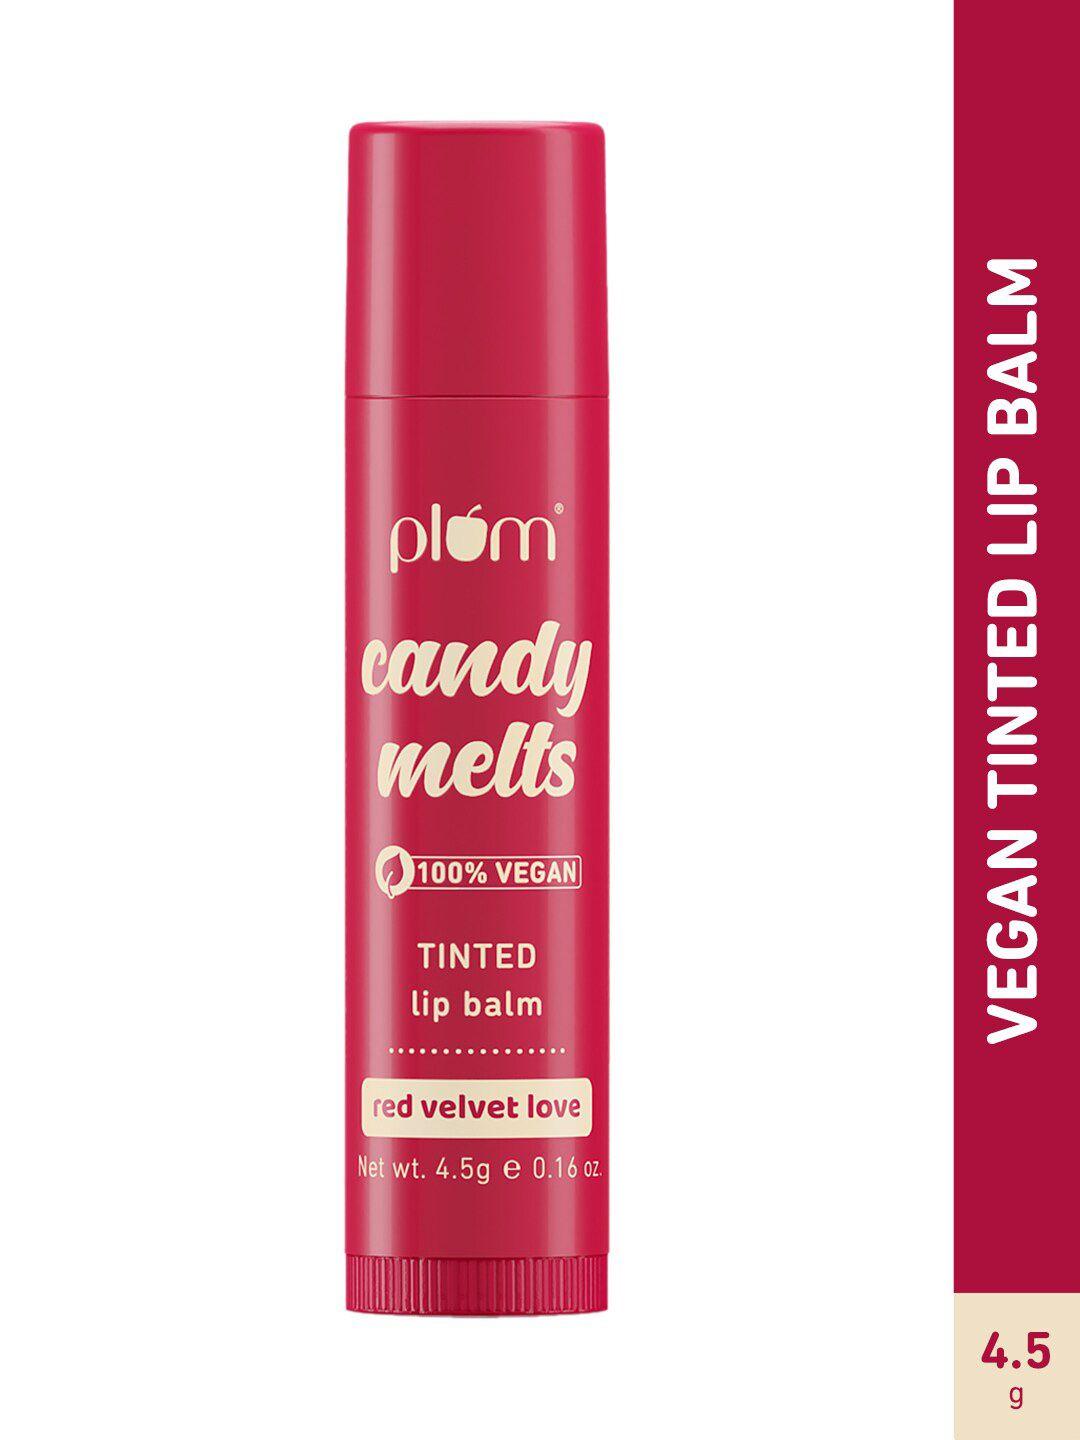 plum candy melts 100% vegan tinted lip balm - red velvet love